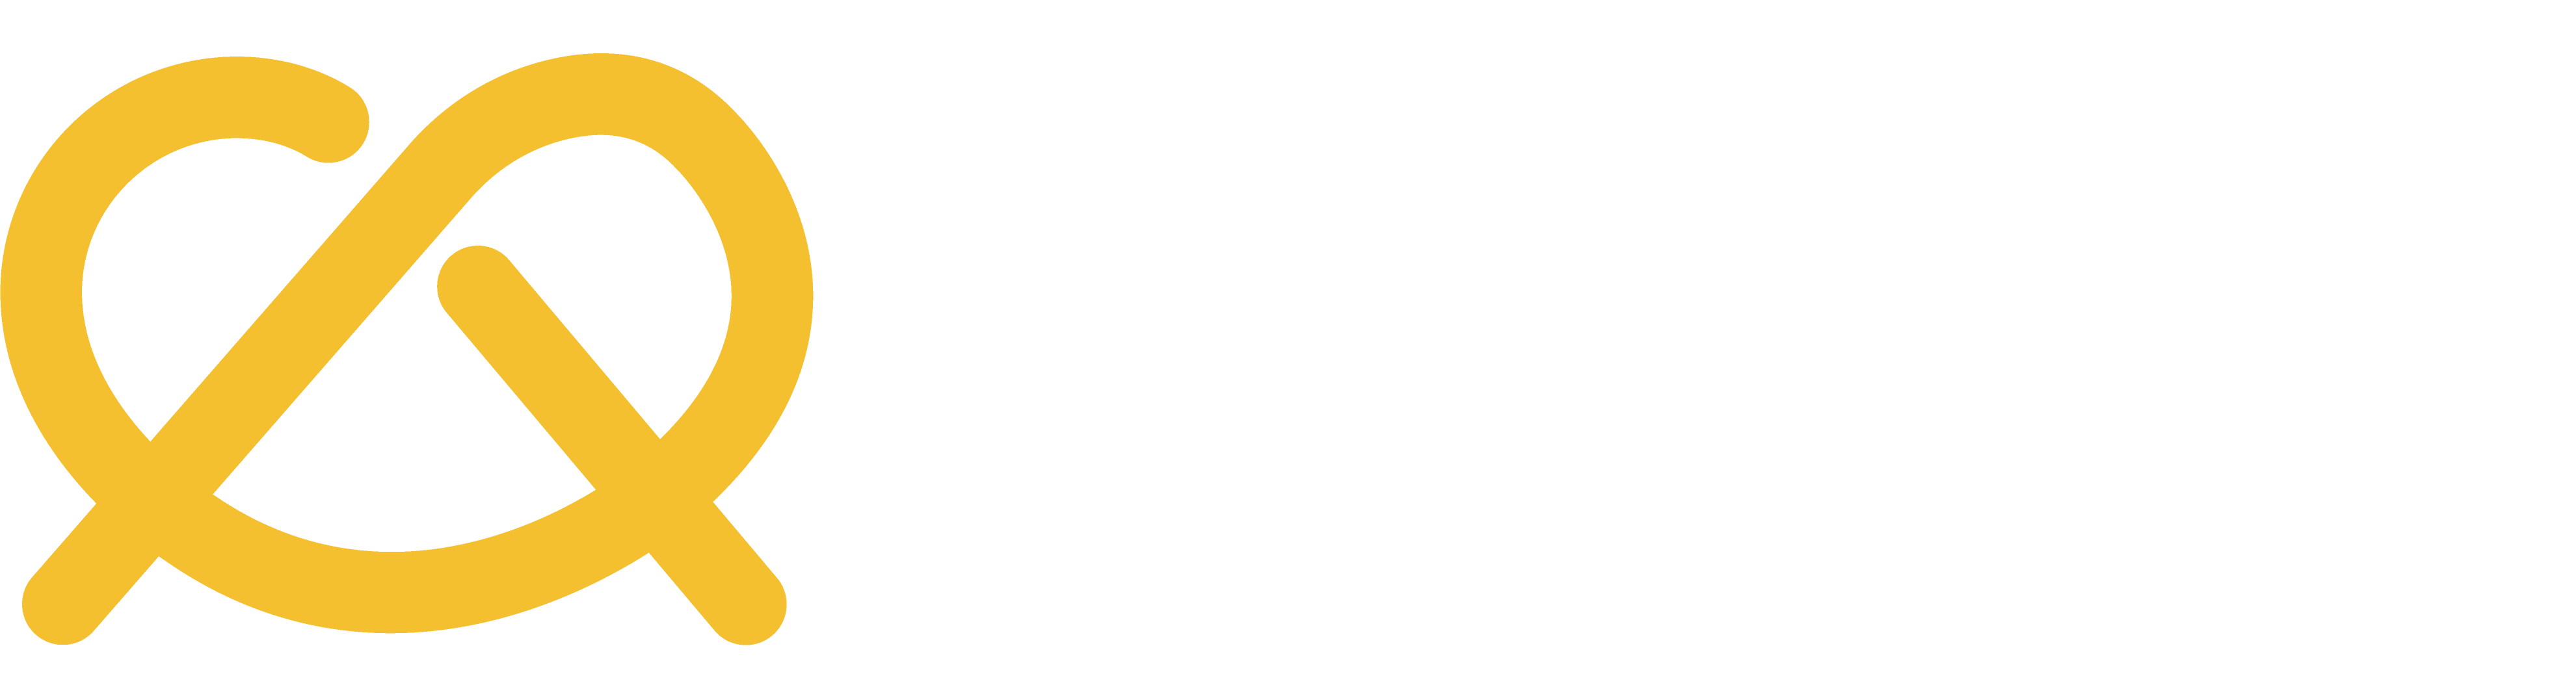 Prtzl logo